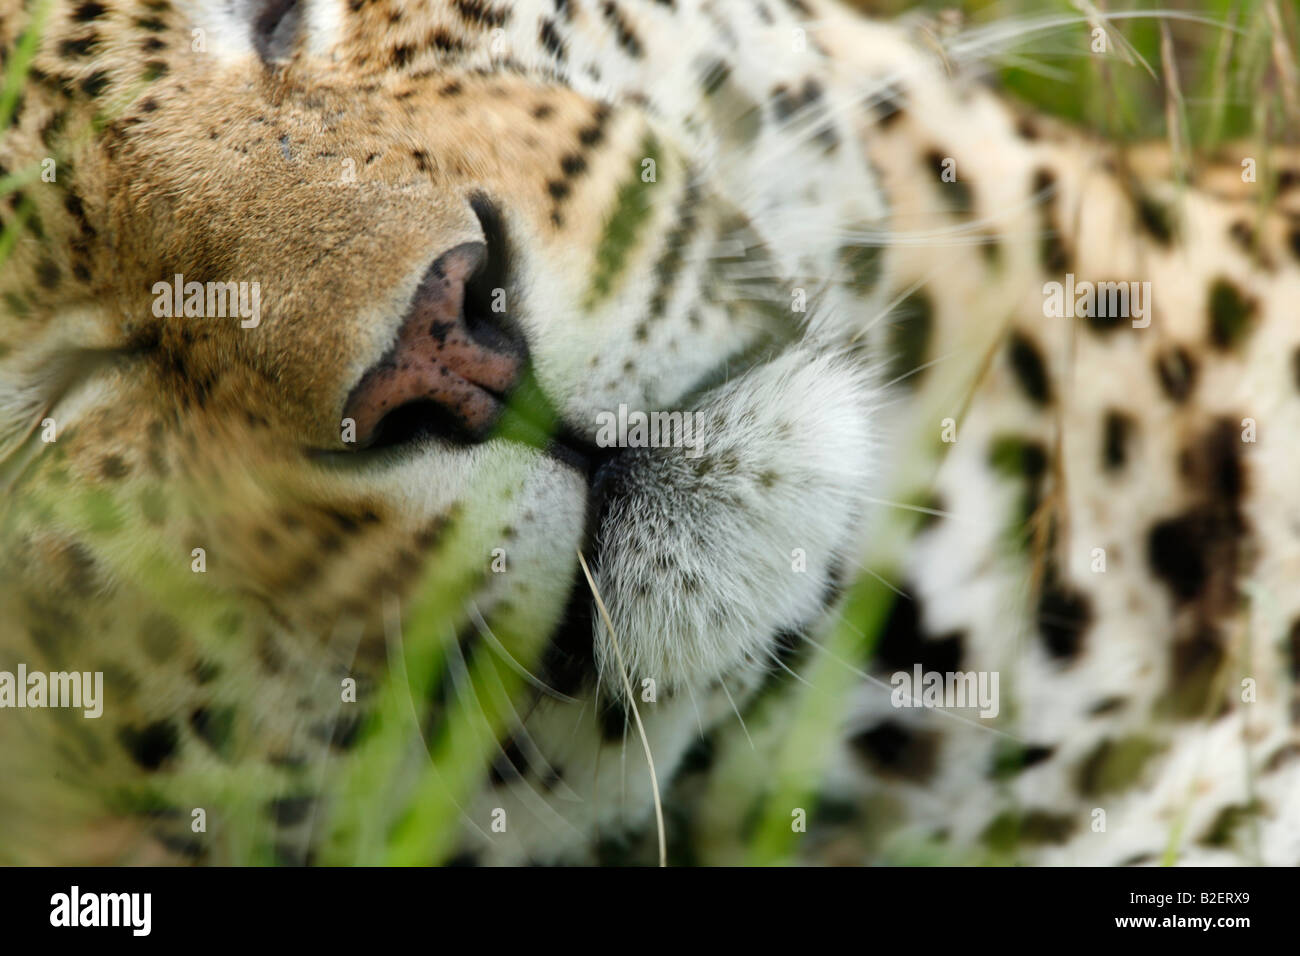 Apretado retrato de la nariz y el hocico de un leopardo durmiendo Foto de stock